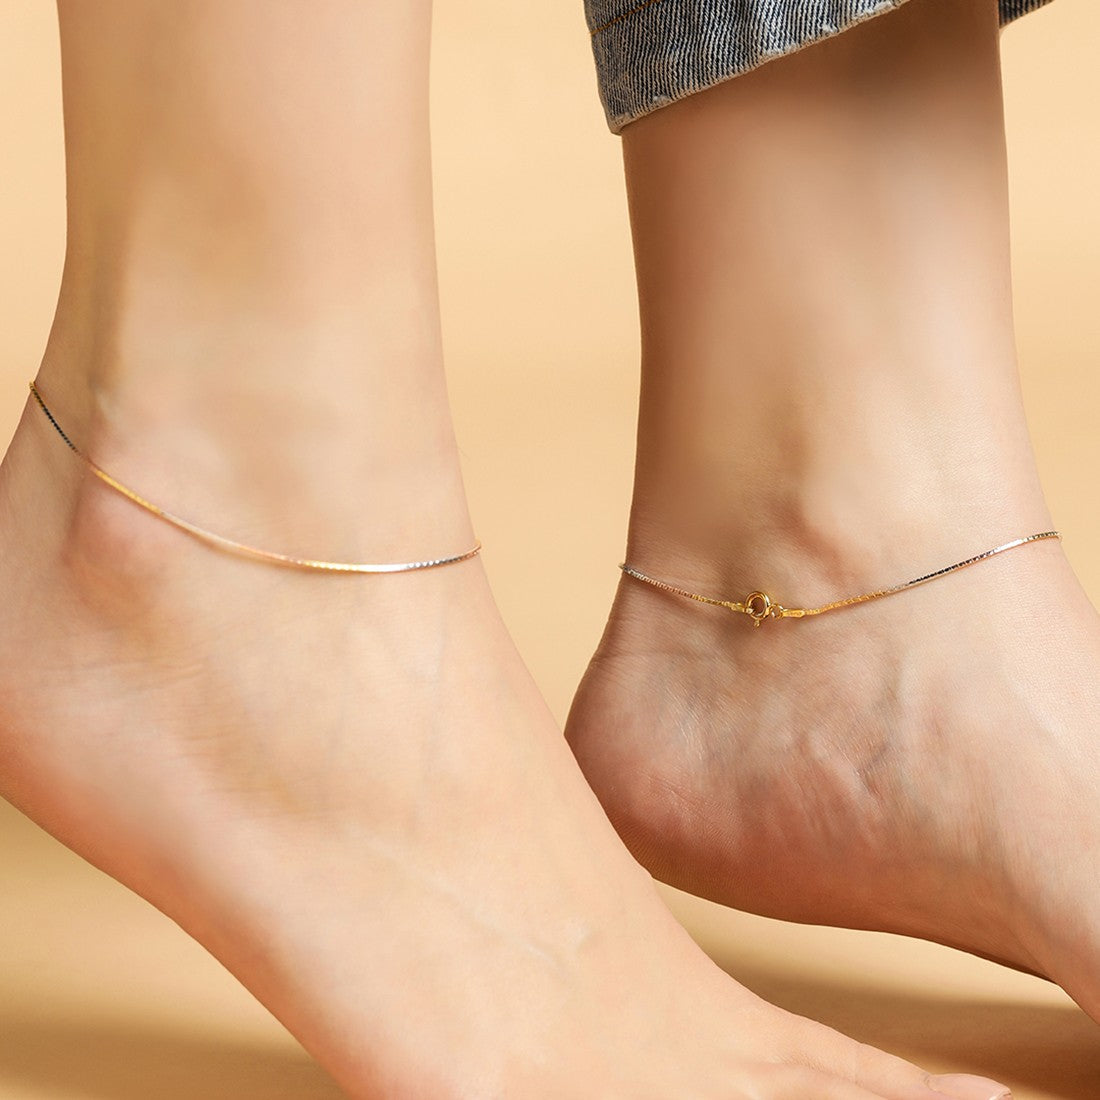 The Elegant 925 Sterling Silver Anklet